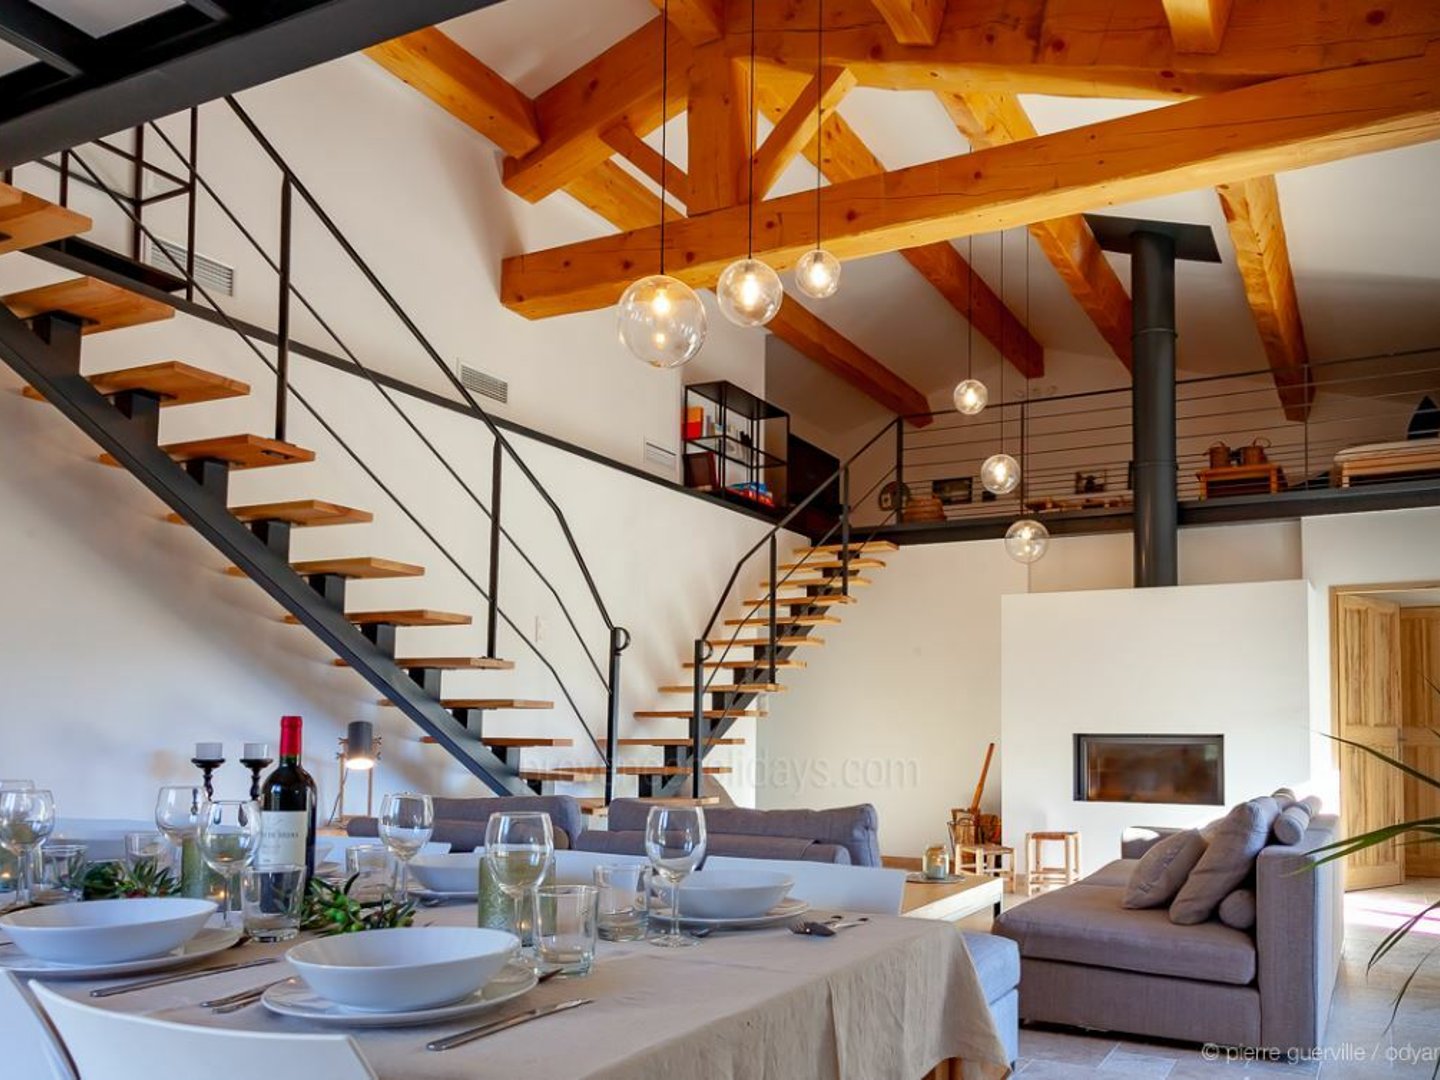 10 - Chez Paola: Villa: Interior